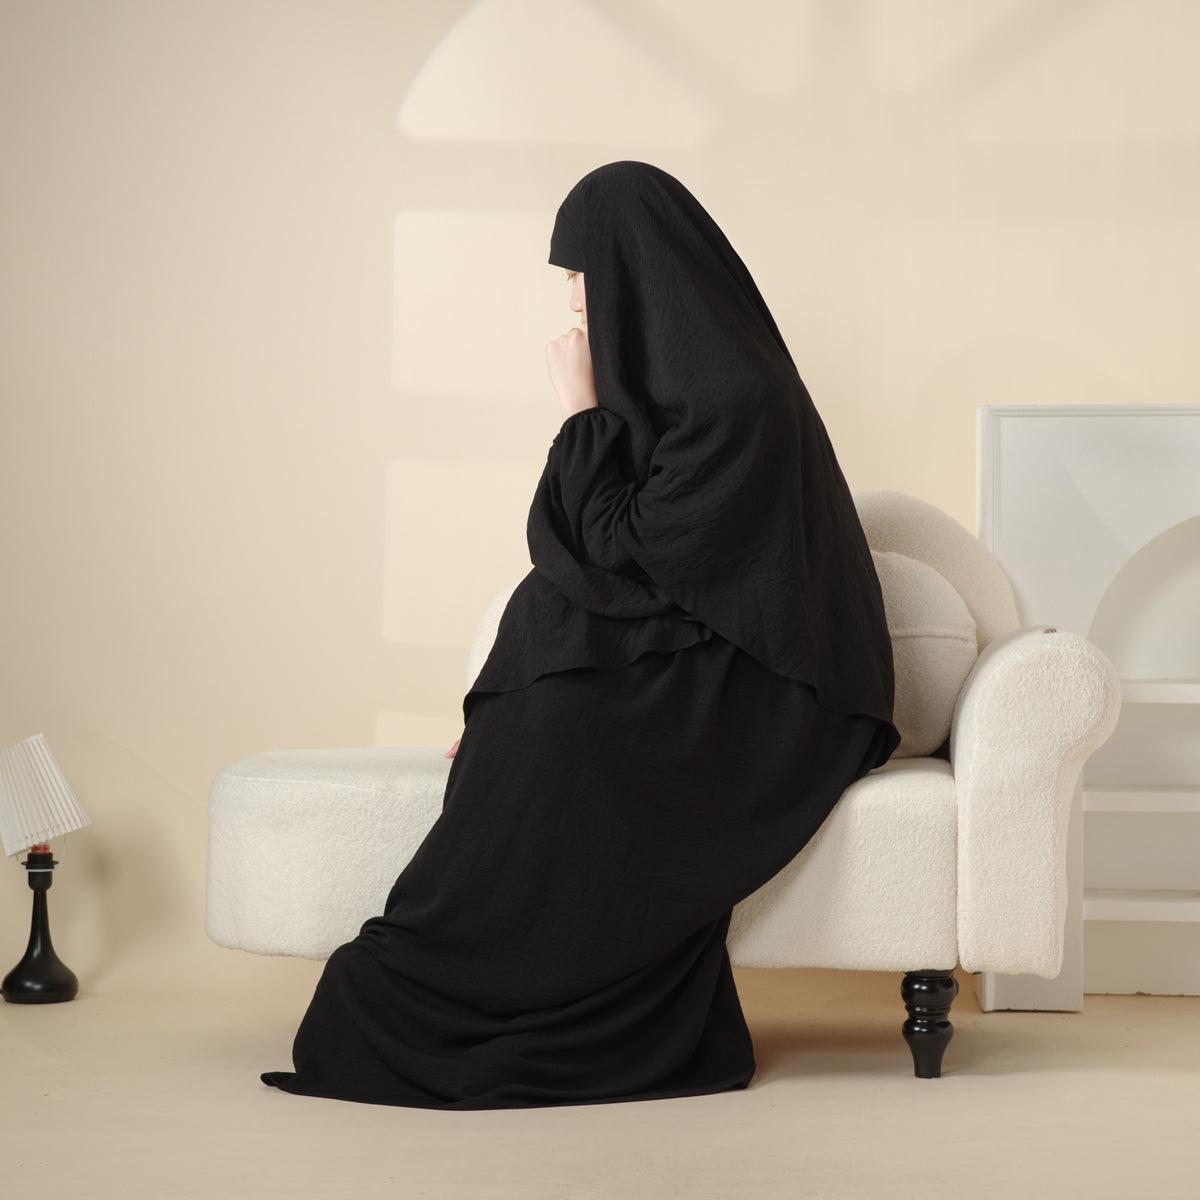 MK008 Elegant Islamic Clothing Crepe Khimar & Abaya Set 2-Piece - Mariam's Collection